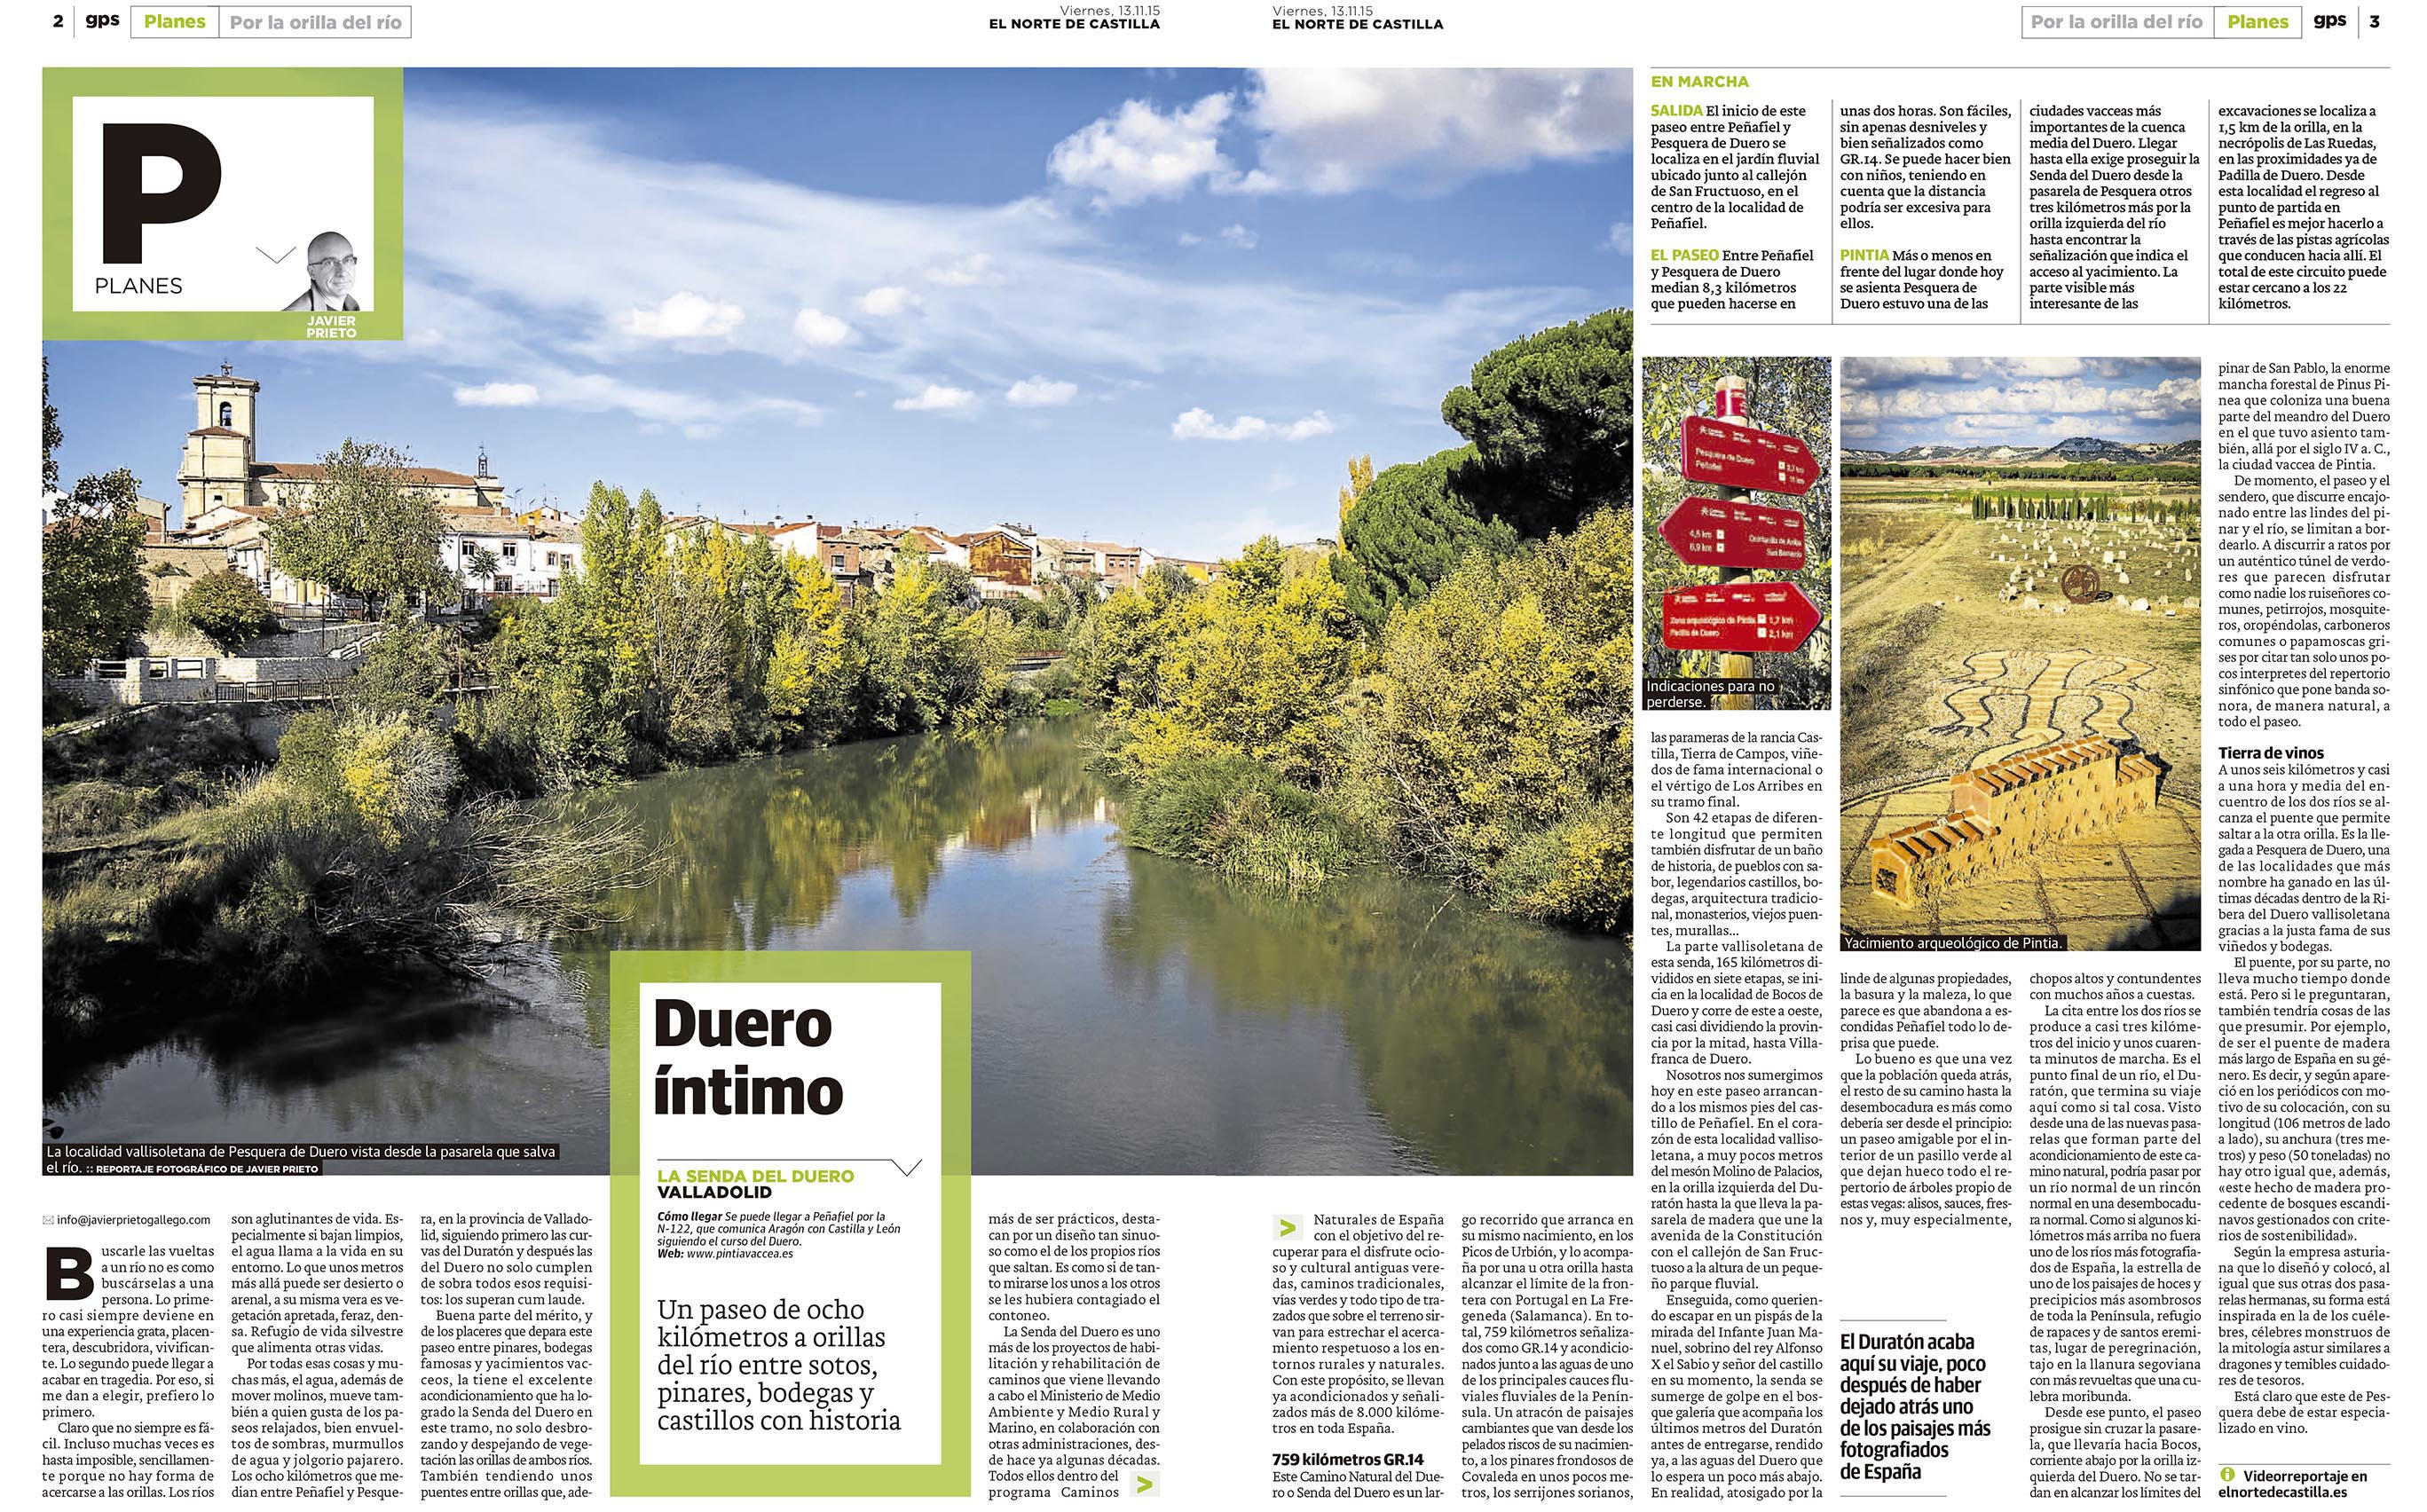 El GR14 entre Peñafiel y Pesquera de Duero. Reportaje publicado por Javier Prieto Gallego en el periódico EL NORTE DE CASTILLA.